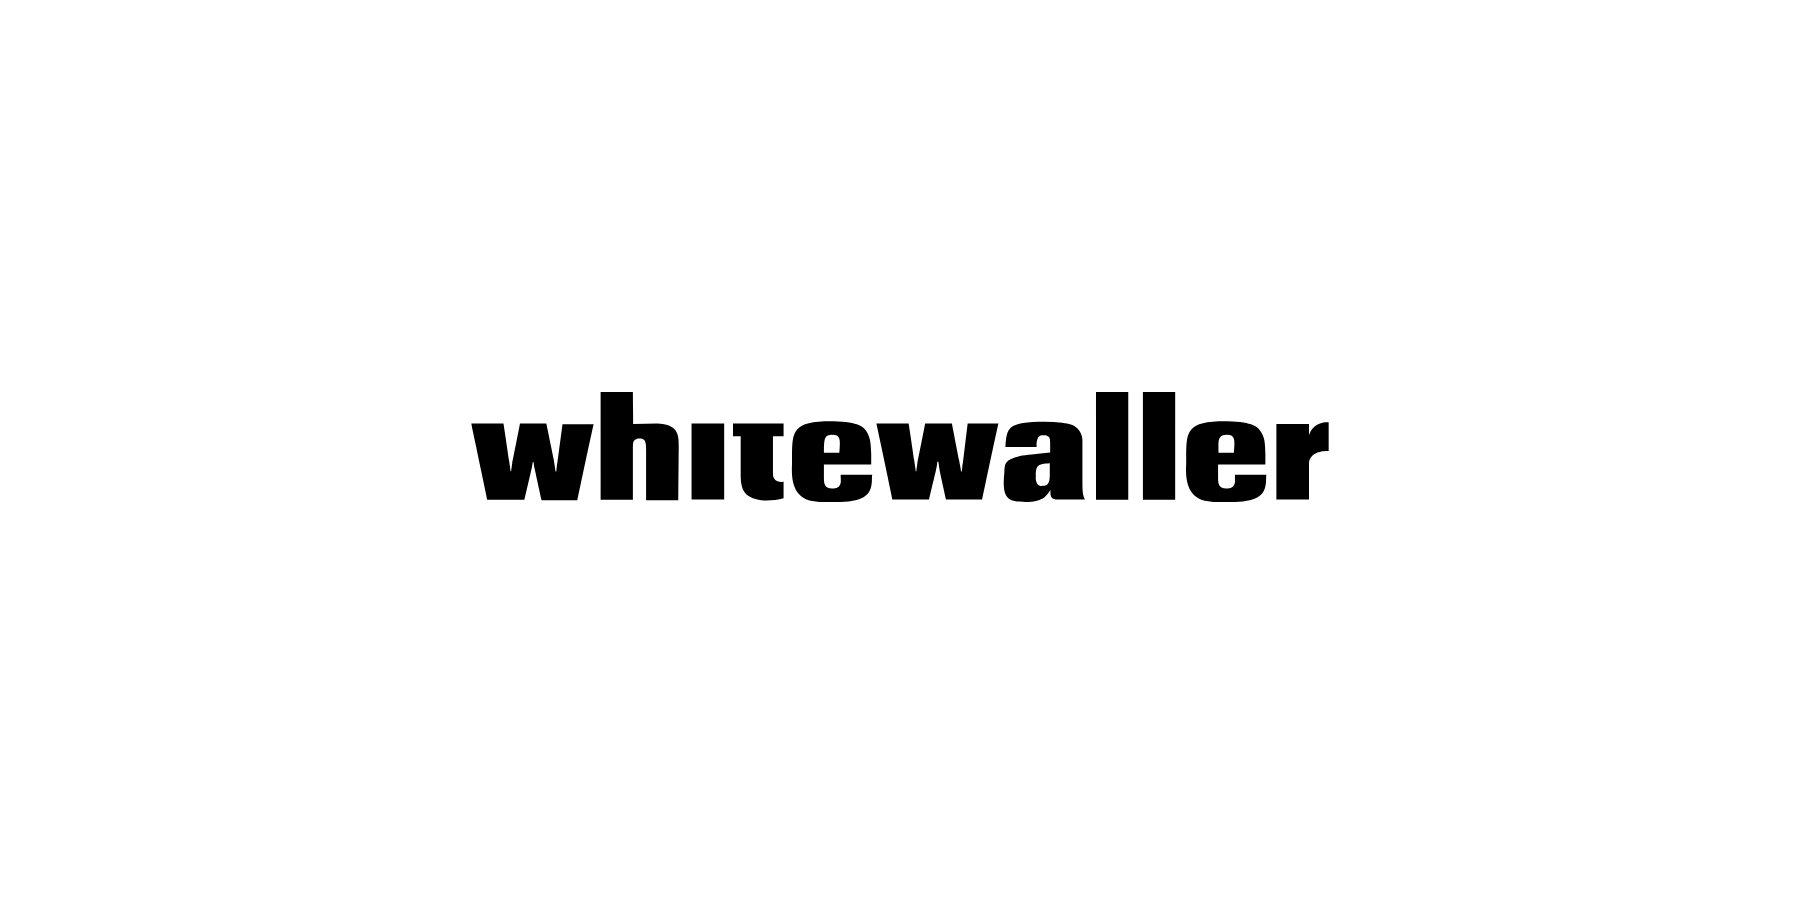 Whitewaller_Single.jpg